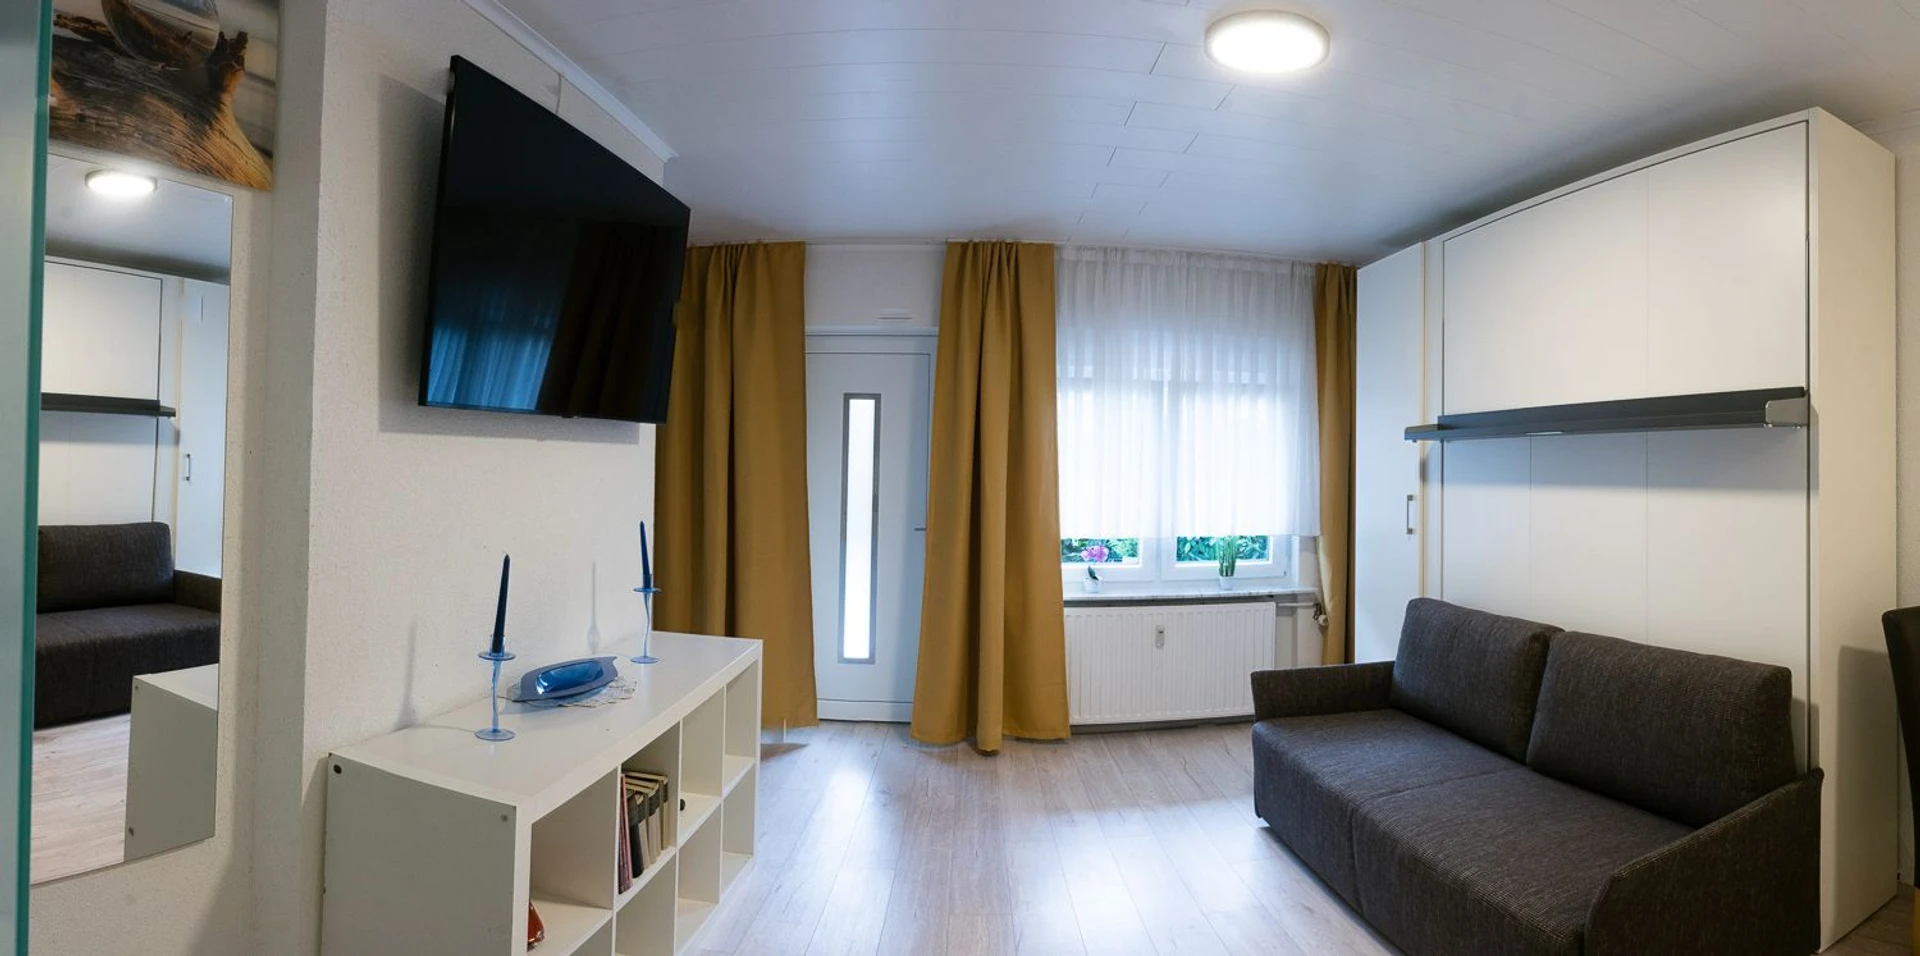 Chambre à louer dans un appartement en colocation à Darmstadt